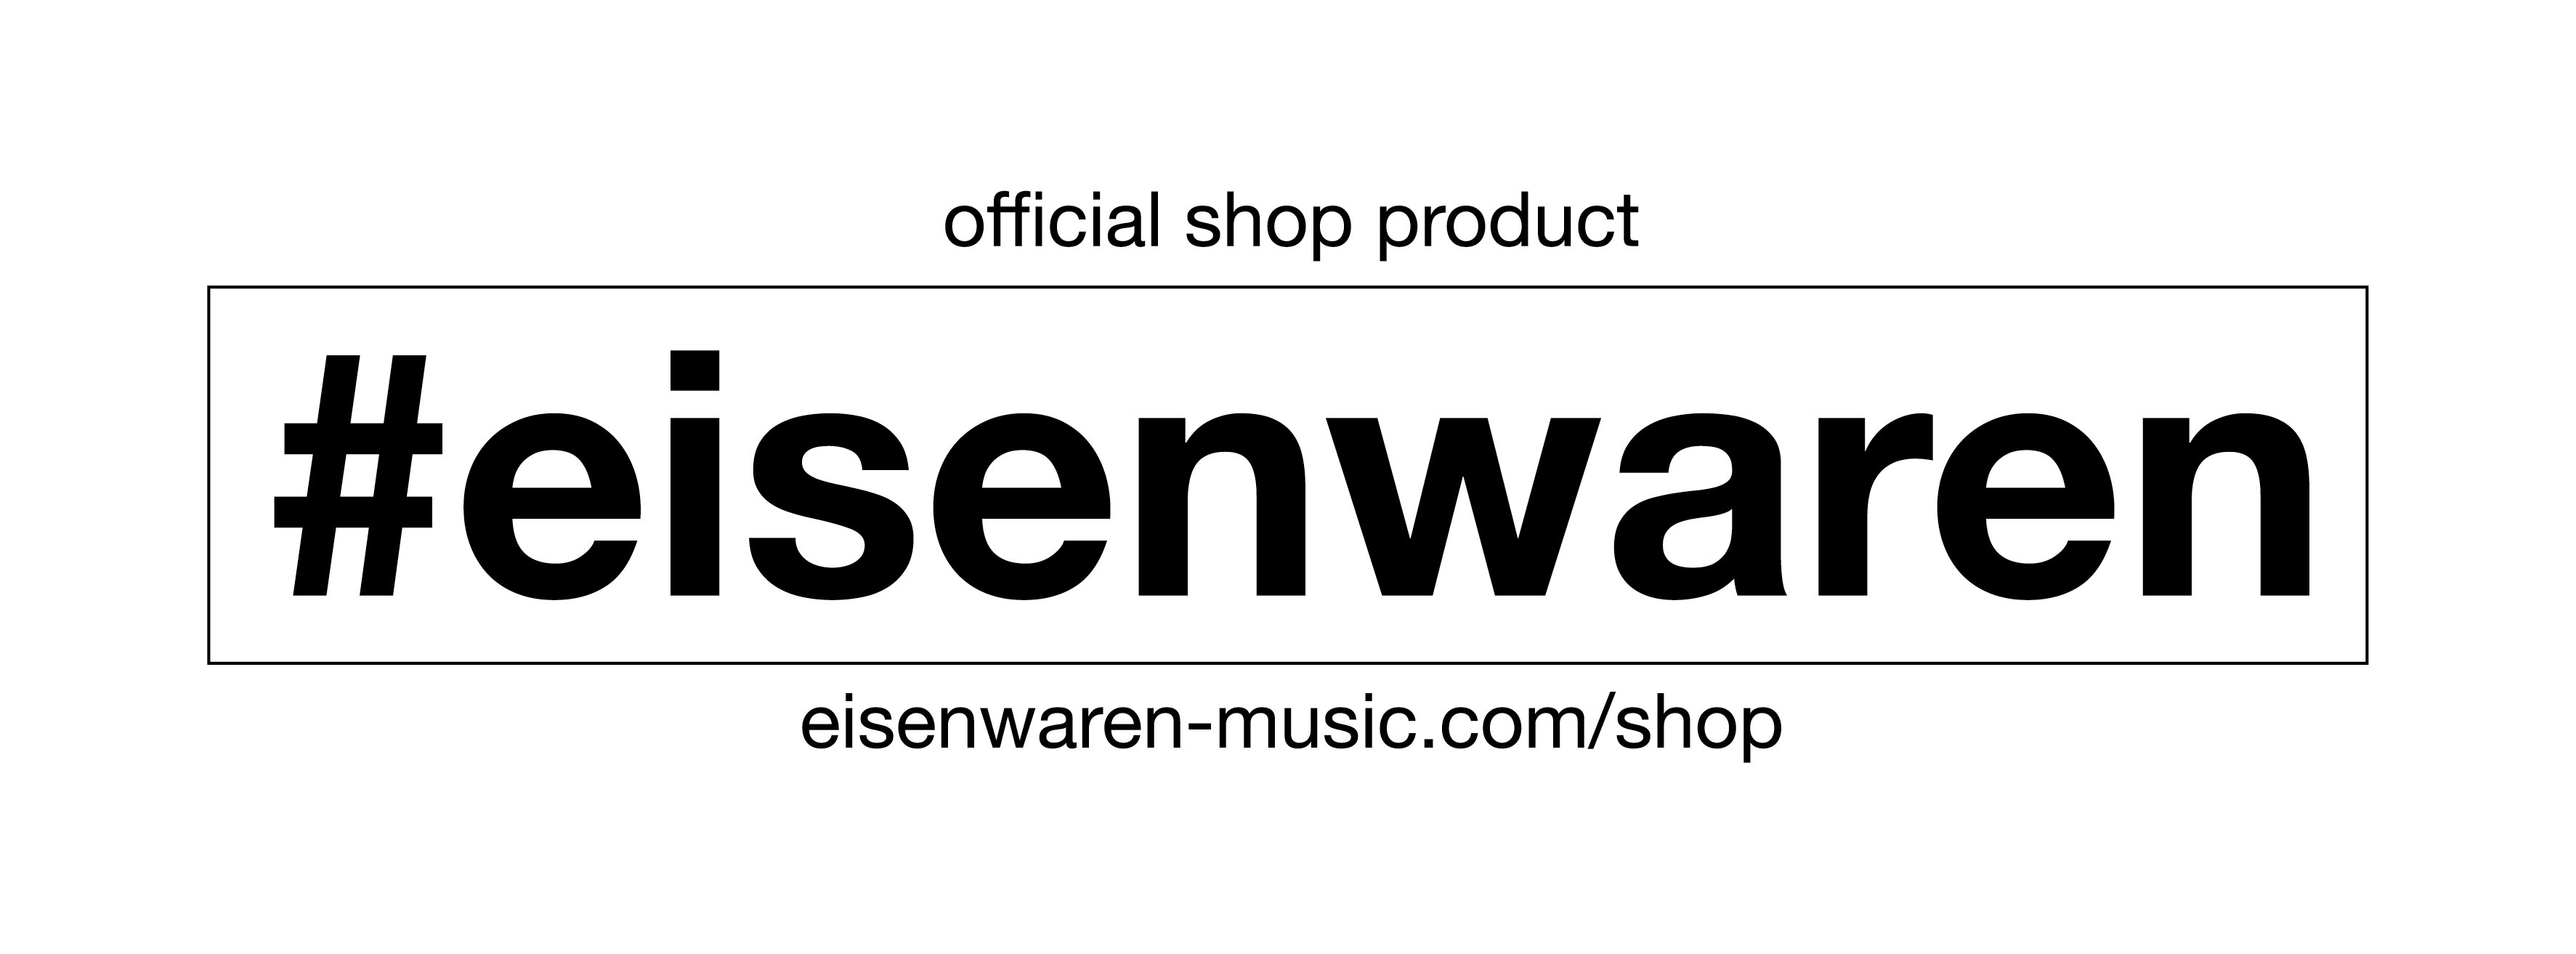 (c) Eisenwaren-music.com